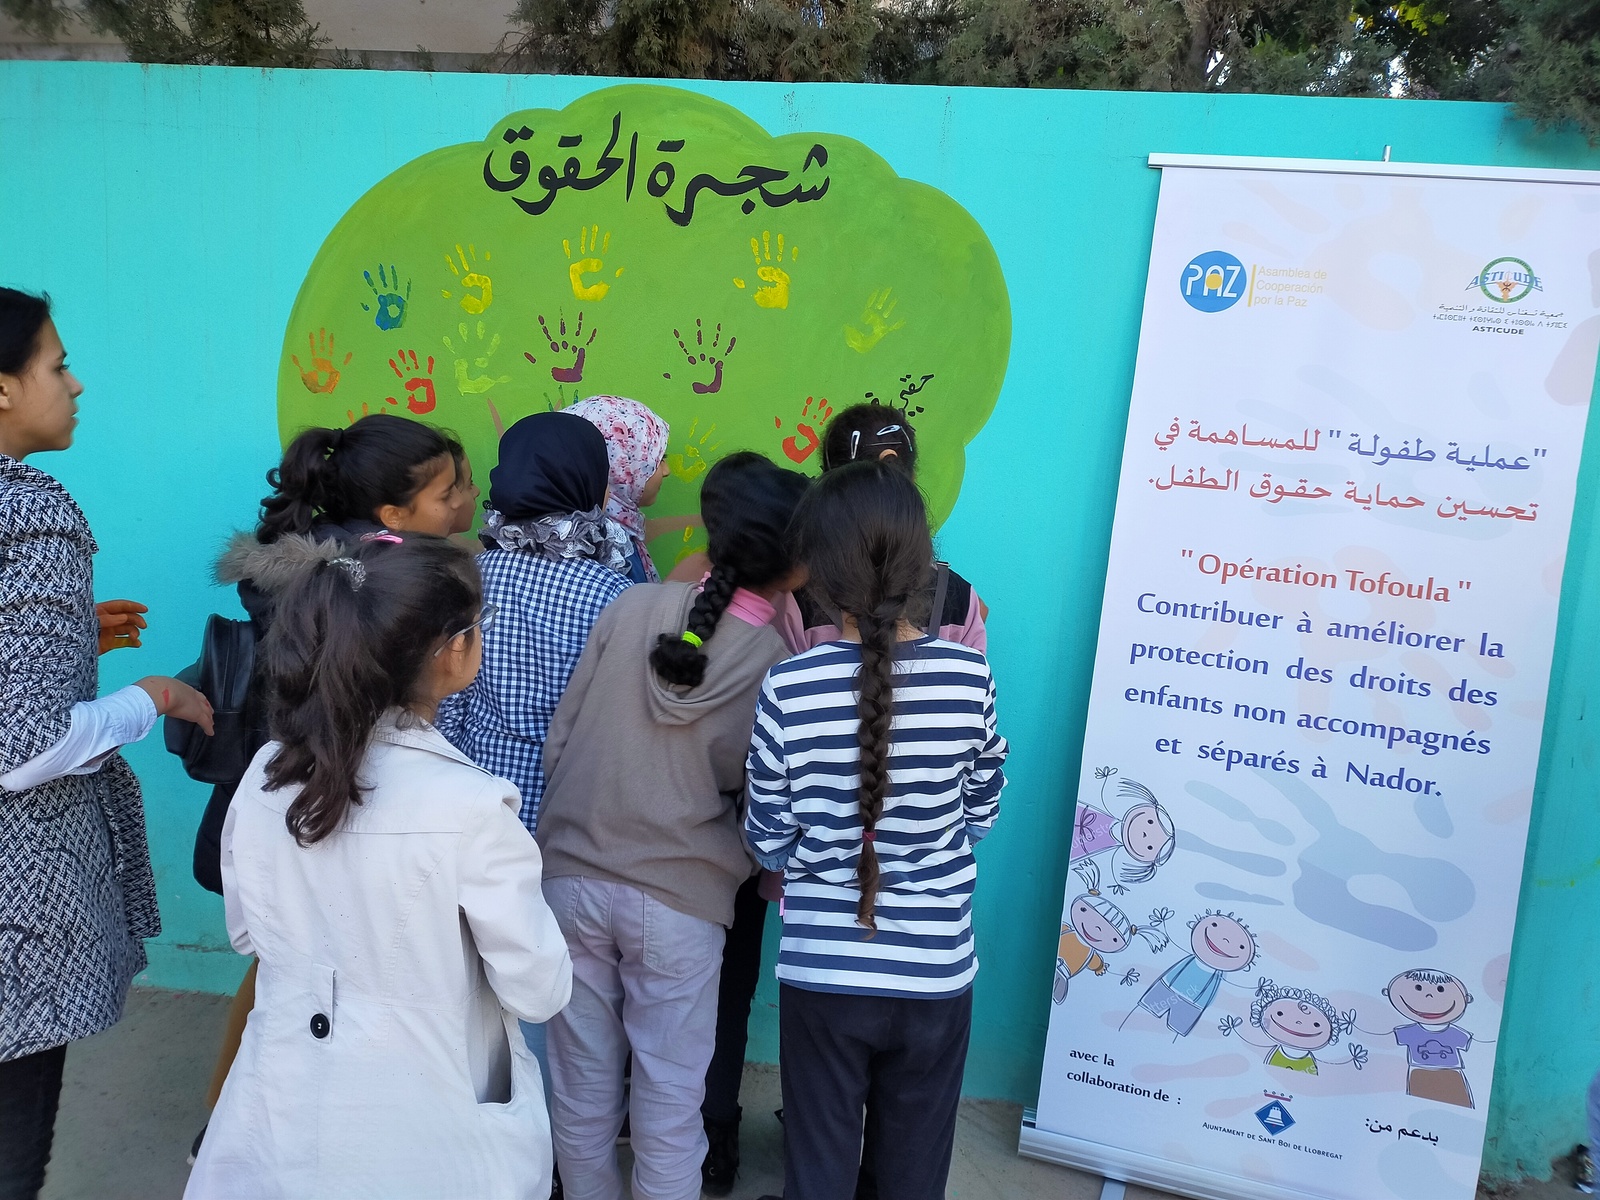 Nenes mirant un cartell en àrab